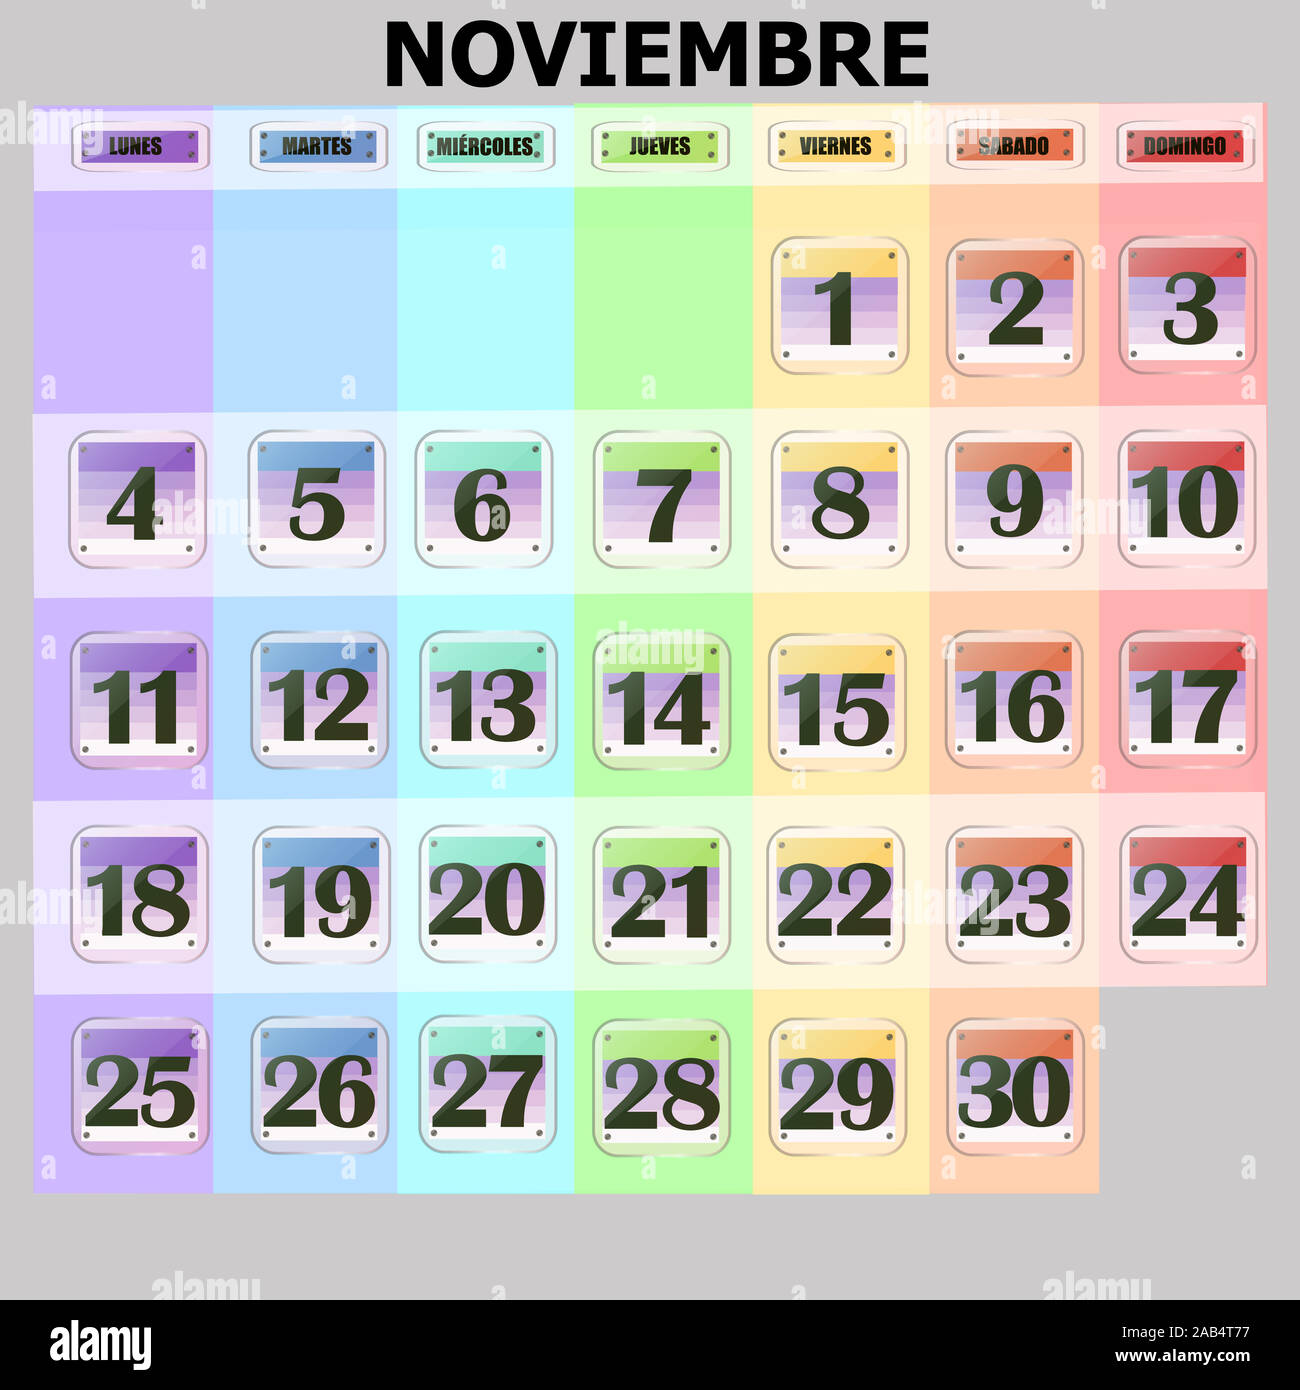 Calendario colorate per novembre 2019 in spagnolo. Set di pulsanti con le date del calendario per il mese di novembre. Per la pianificazione di importanti giorni. Banner per i giorni festivi e giorni speciali. Illustrazione. Foto Stock